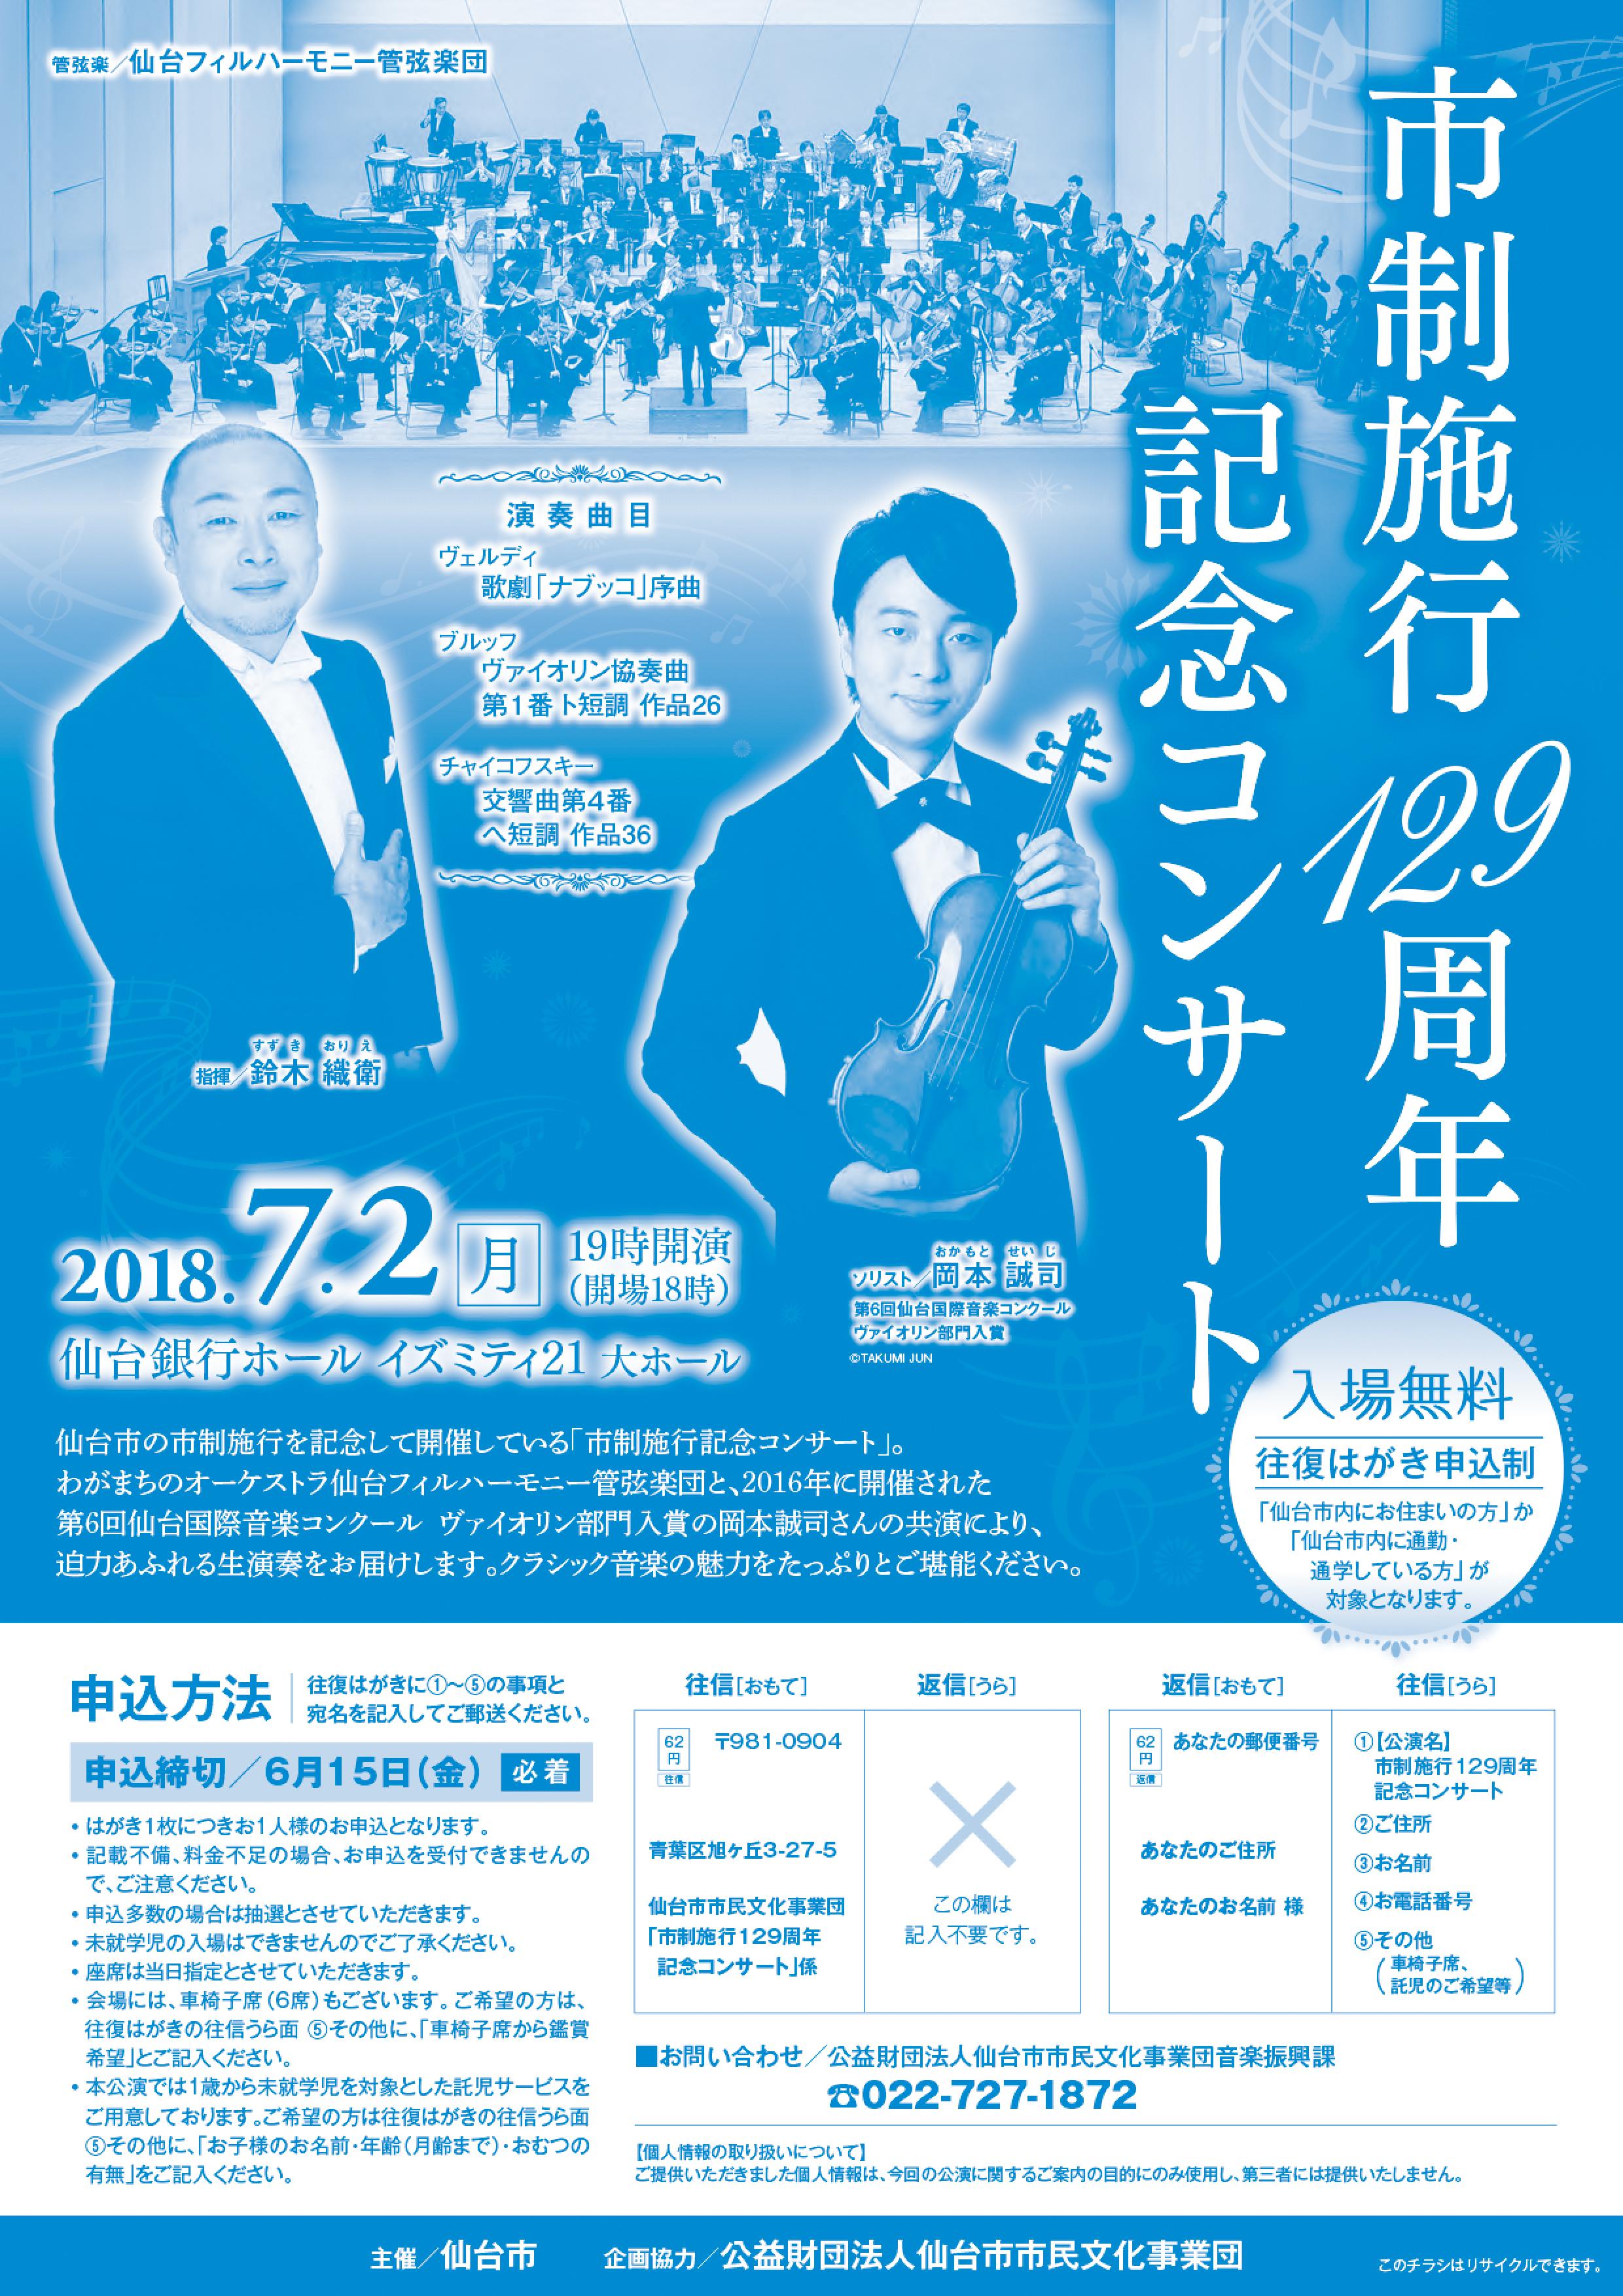 市制施行129周年記念コンサート | 仙台国際音楽コンクール公式サイト